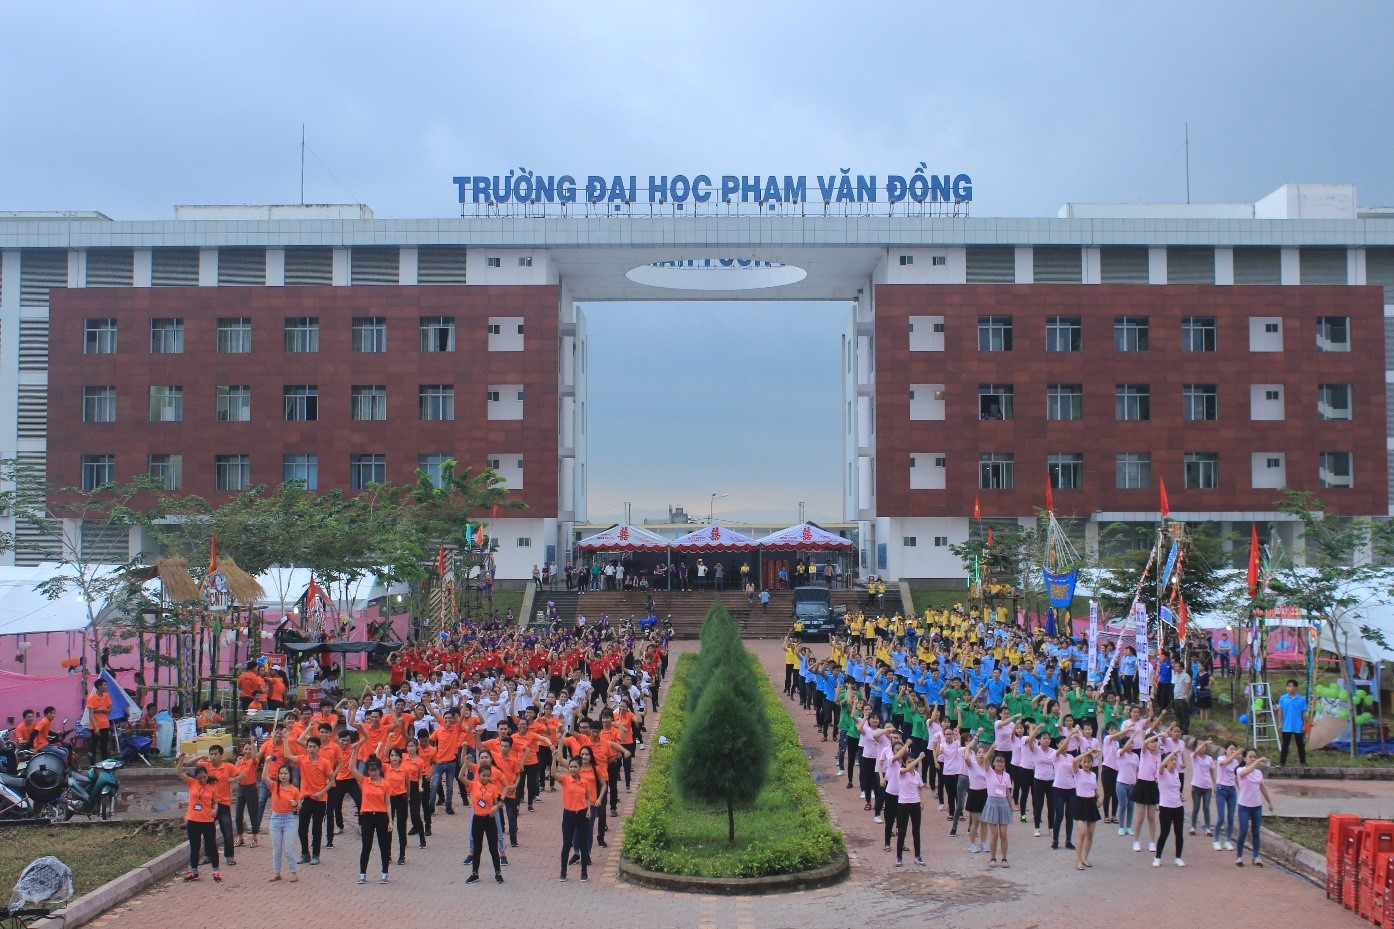 Trường Đại học Phạm Văn Đồng